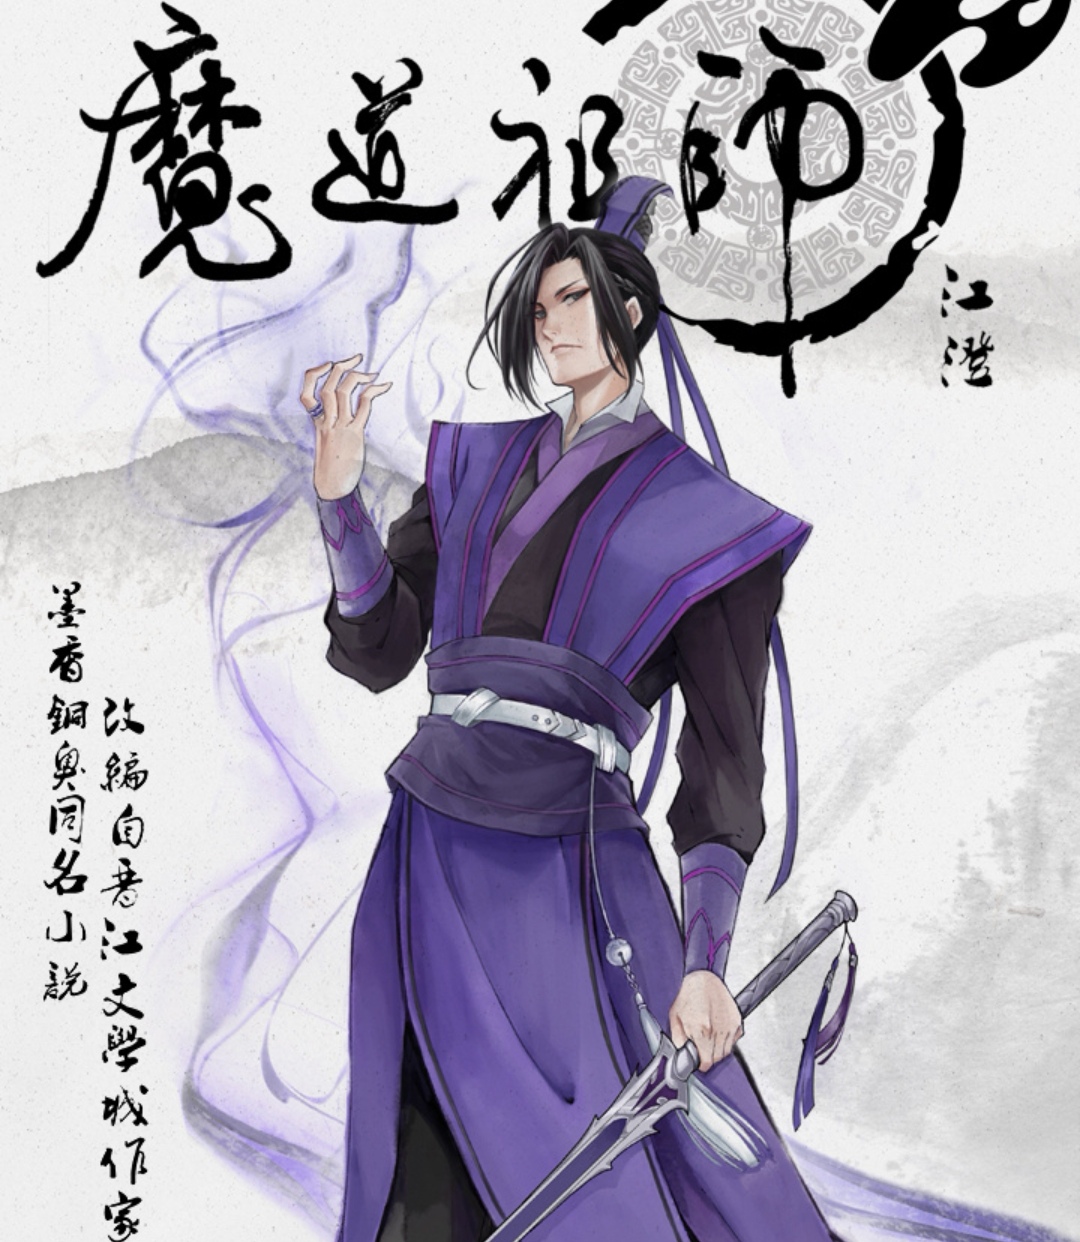 《魔道祖师》完结篇5位角色海报公布,江澄超帅,对比初版差距大